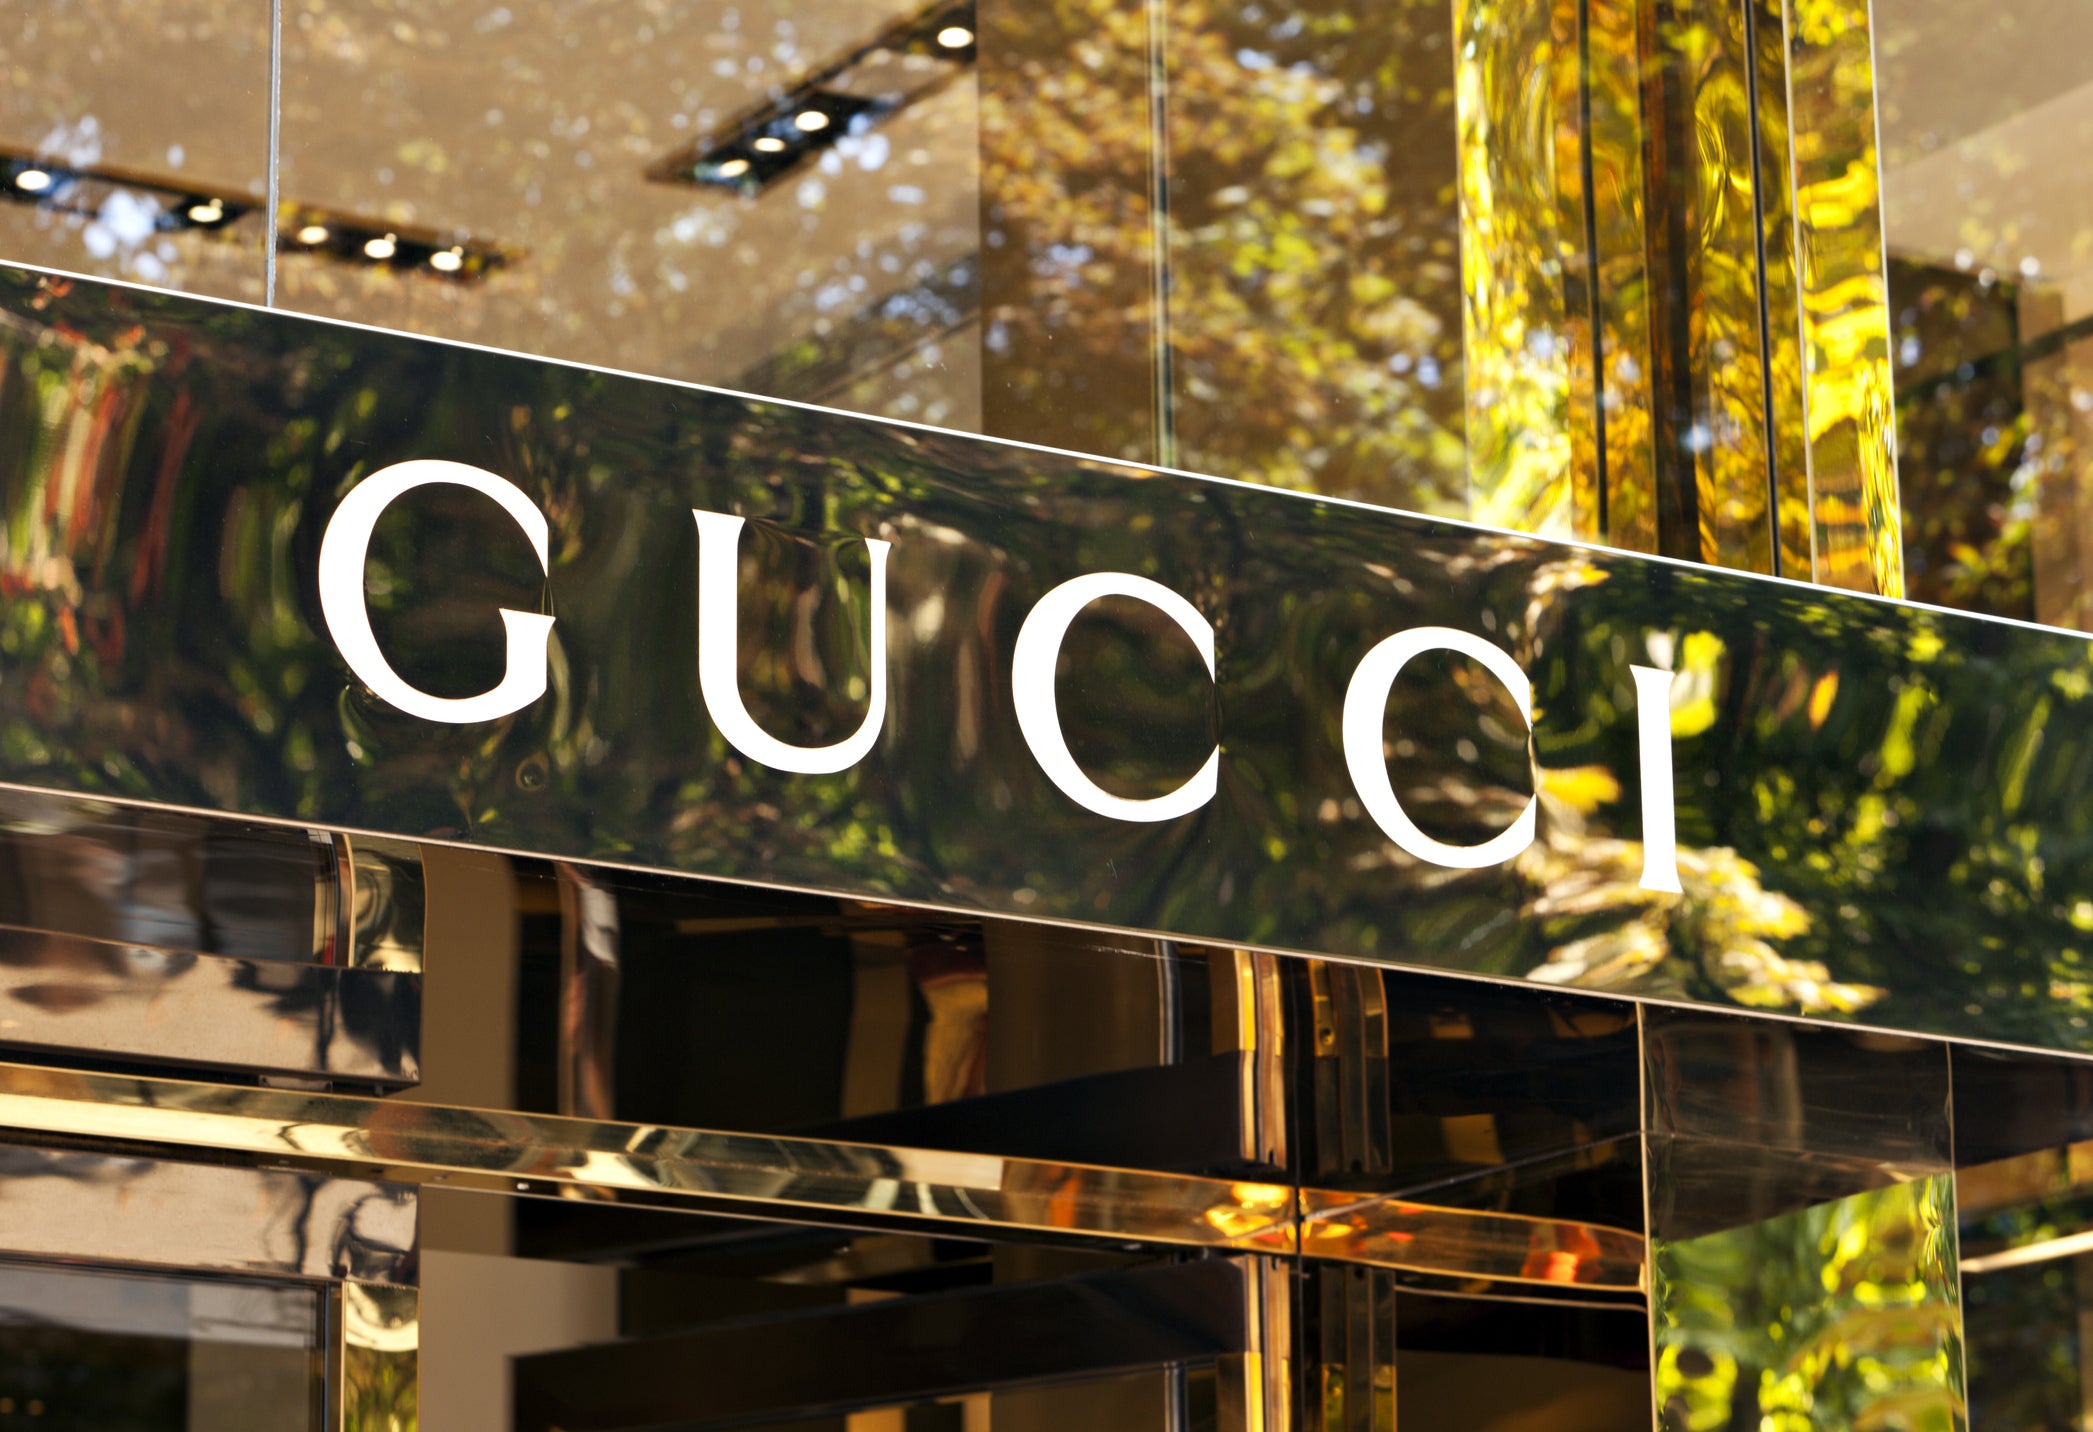 Gucci durag : myth or reality ?